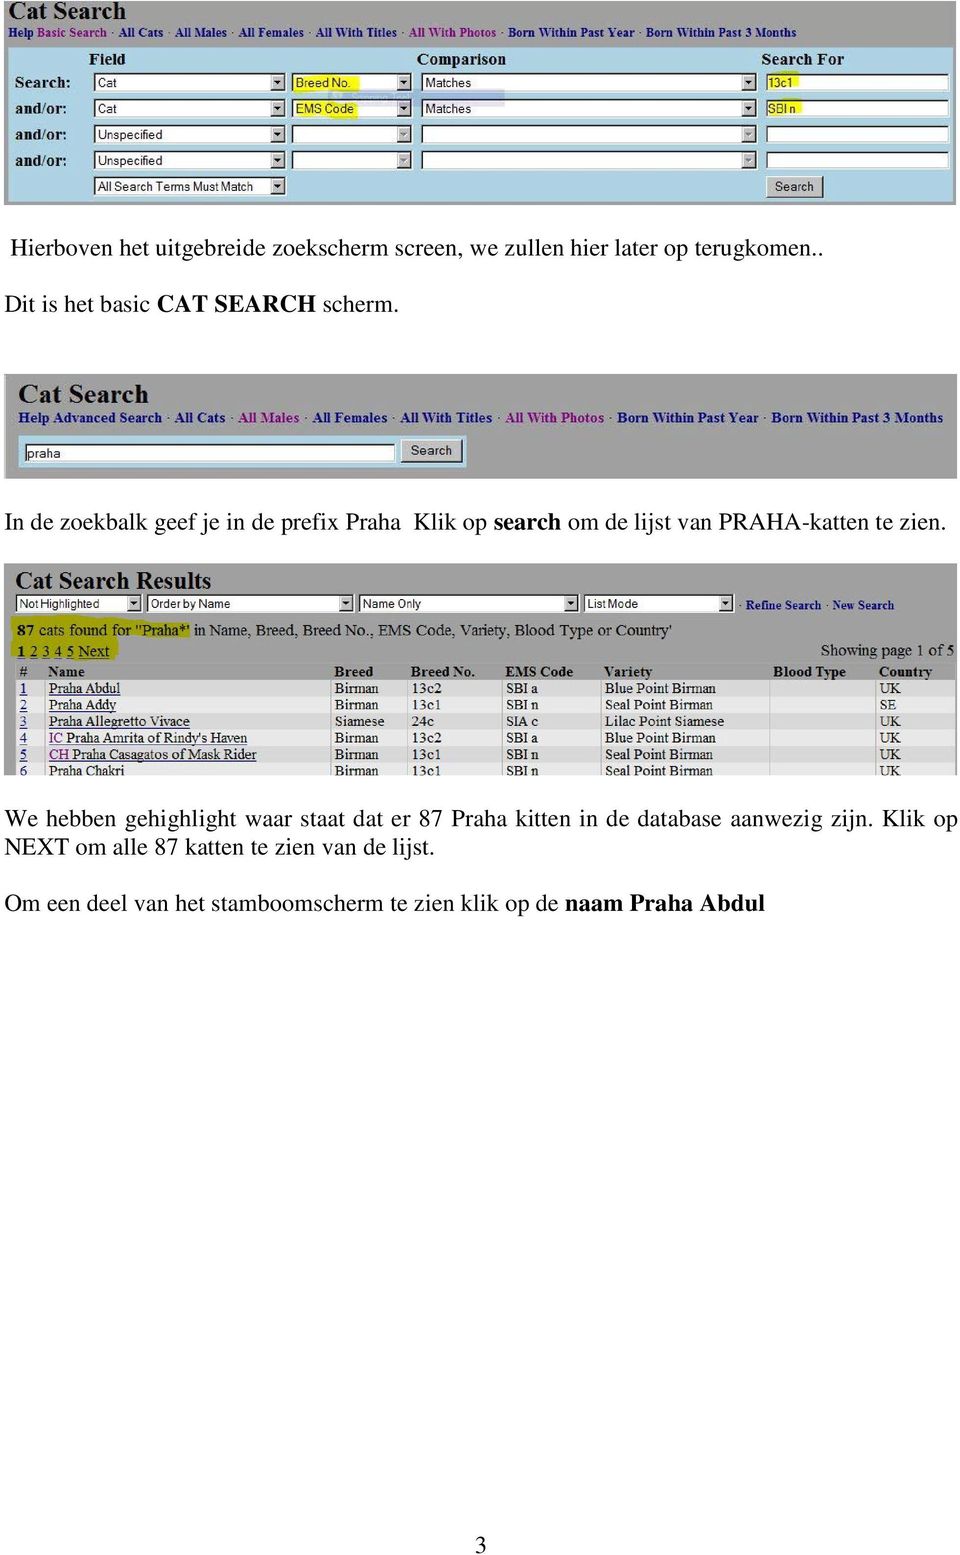 In de zoekbalk geef je in de prefix Praha Klik op search om de lijst van PRAHA-katten te zien.